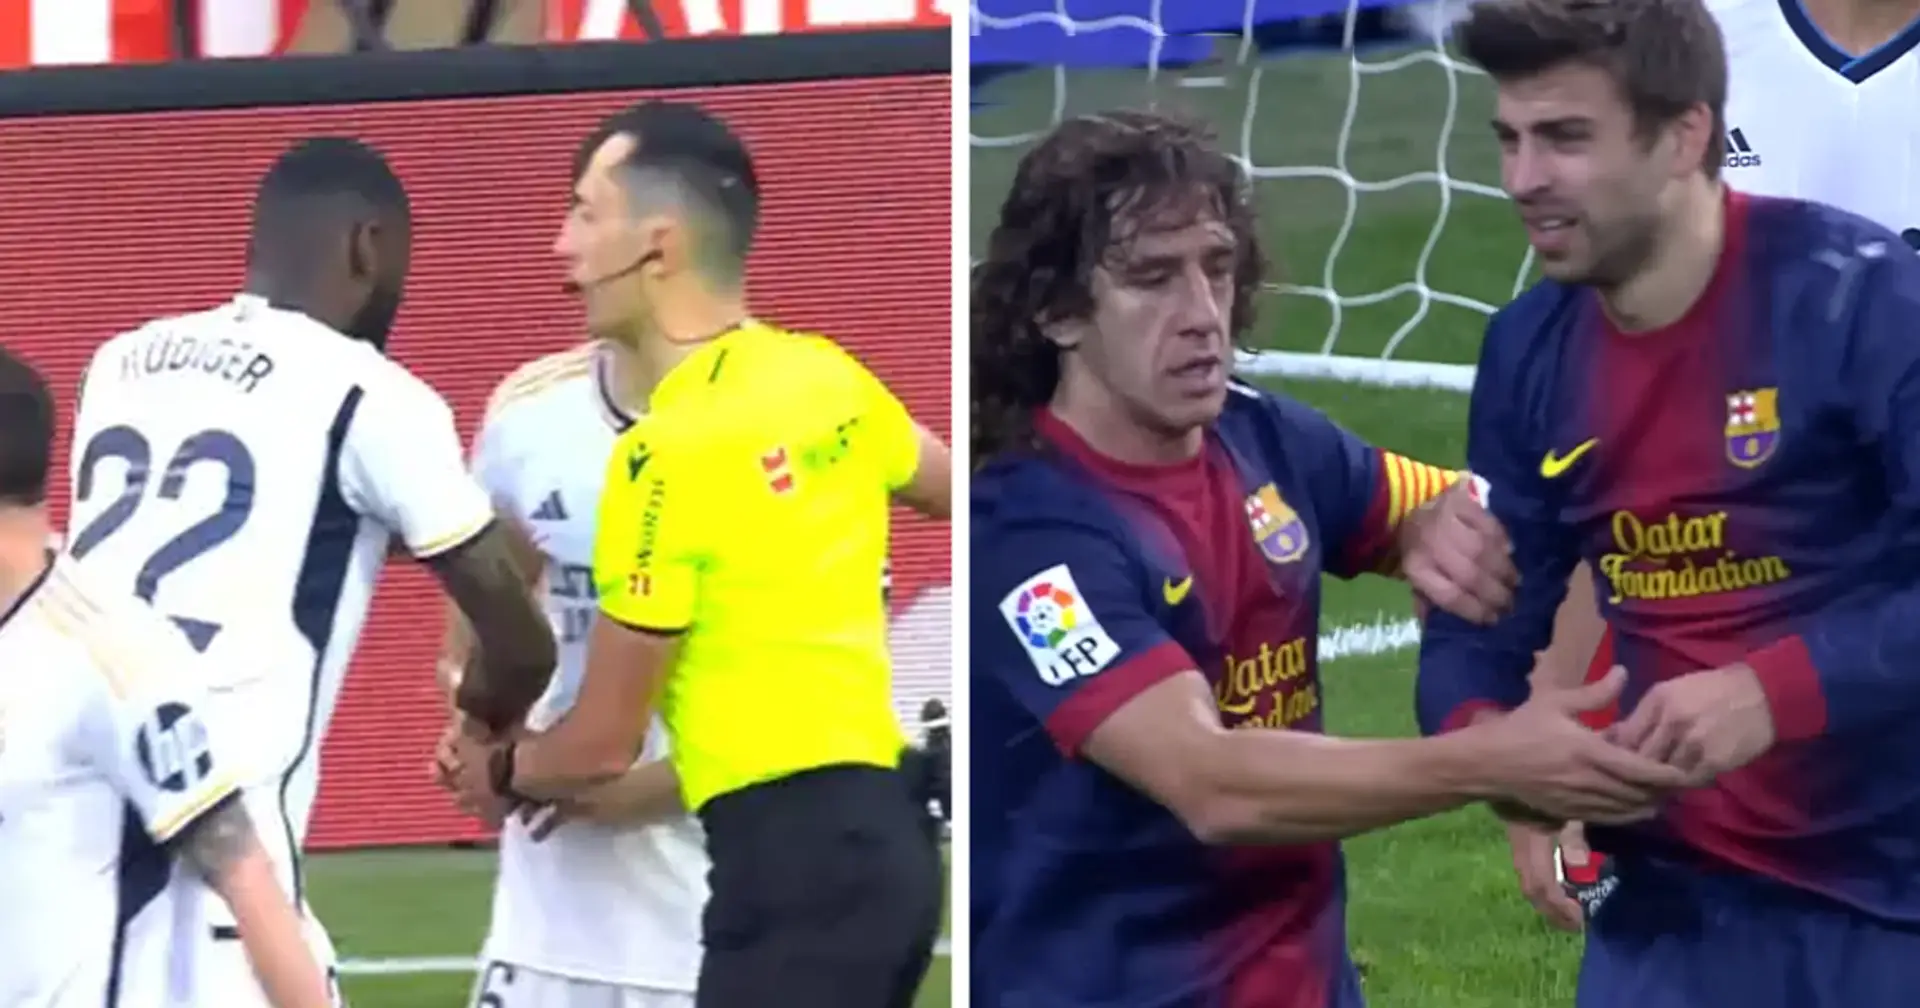 La réaction rapide de Nacho et Rüdiger à l'incident de la bouteille à Majorque rappelle le même moment avec Puyol contre Real Madrid